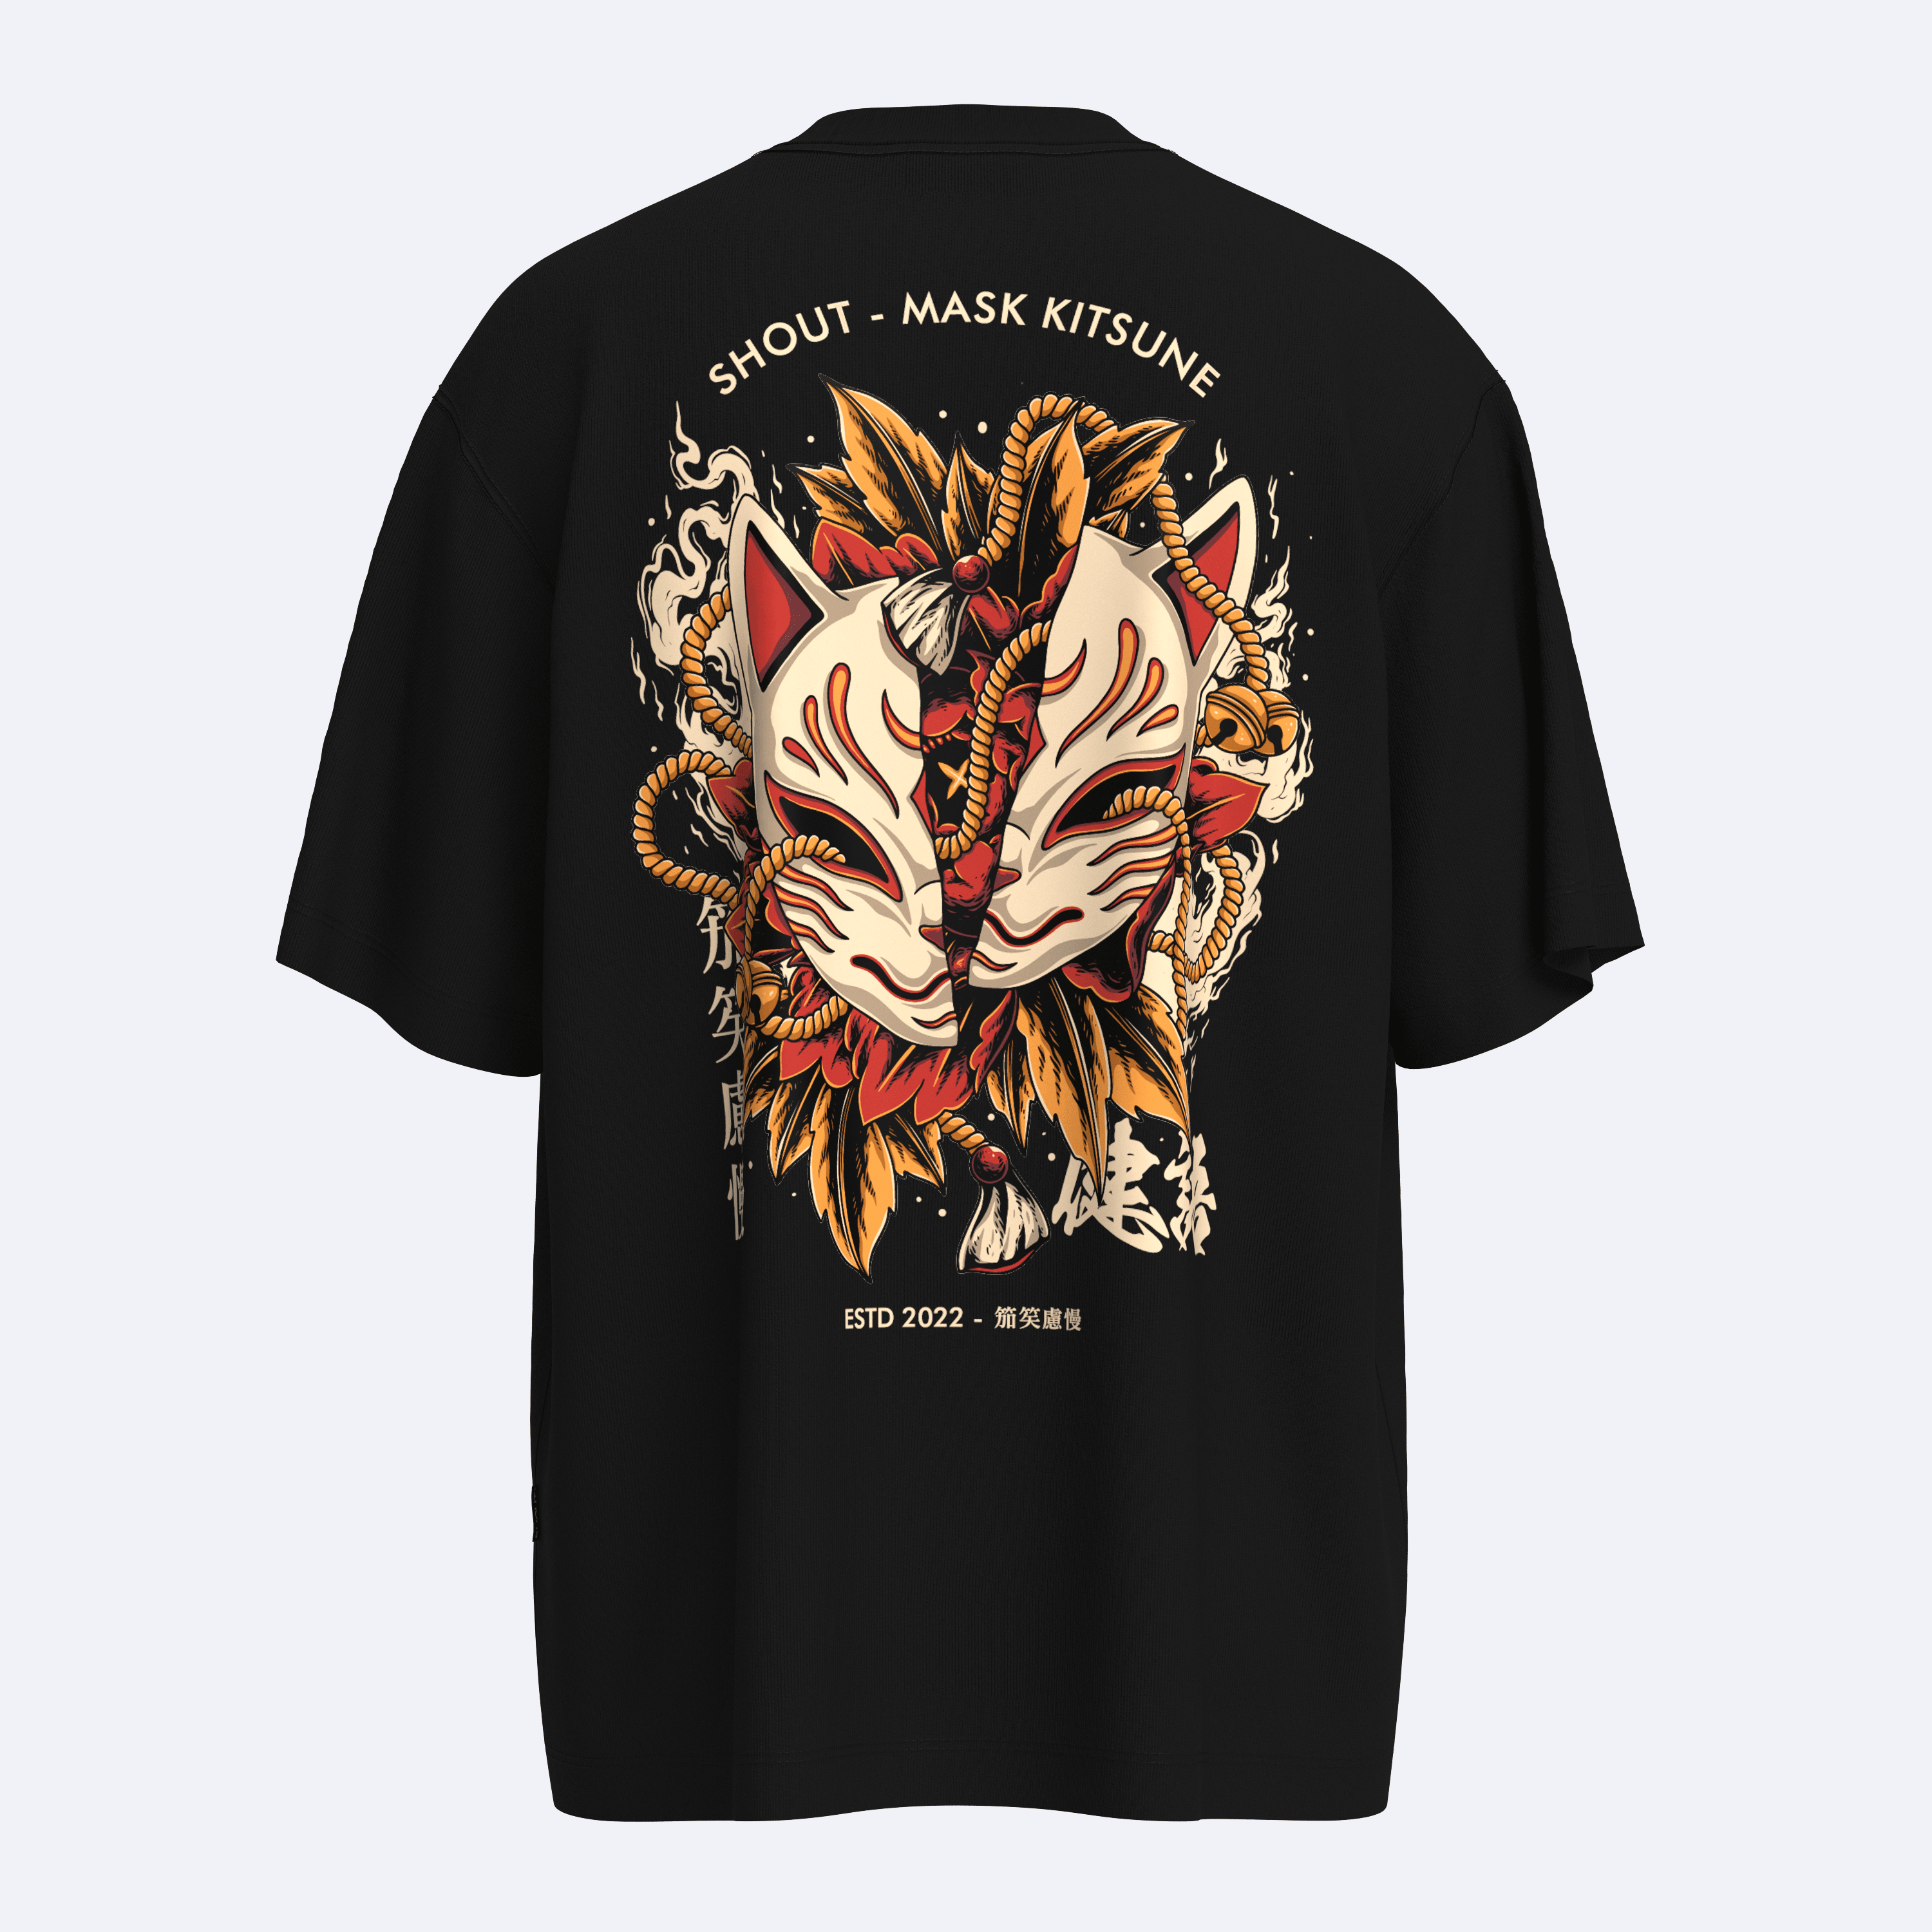 Shout Oversize Limited Edition Mask Kitsune 2022 Unisex T-Shirt